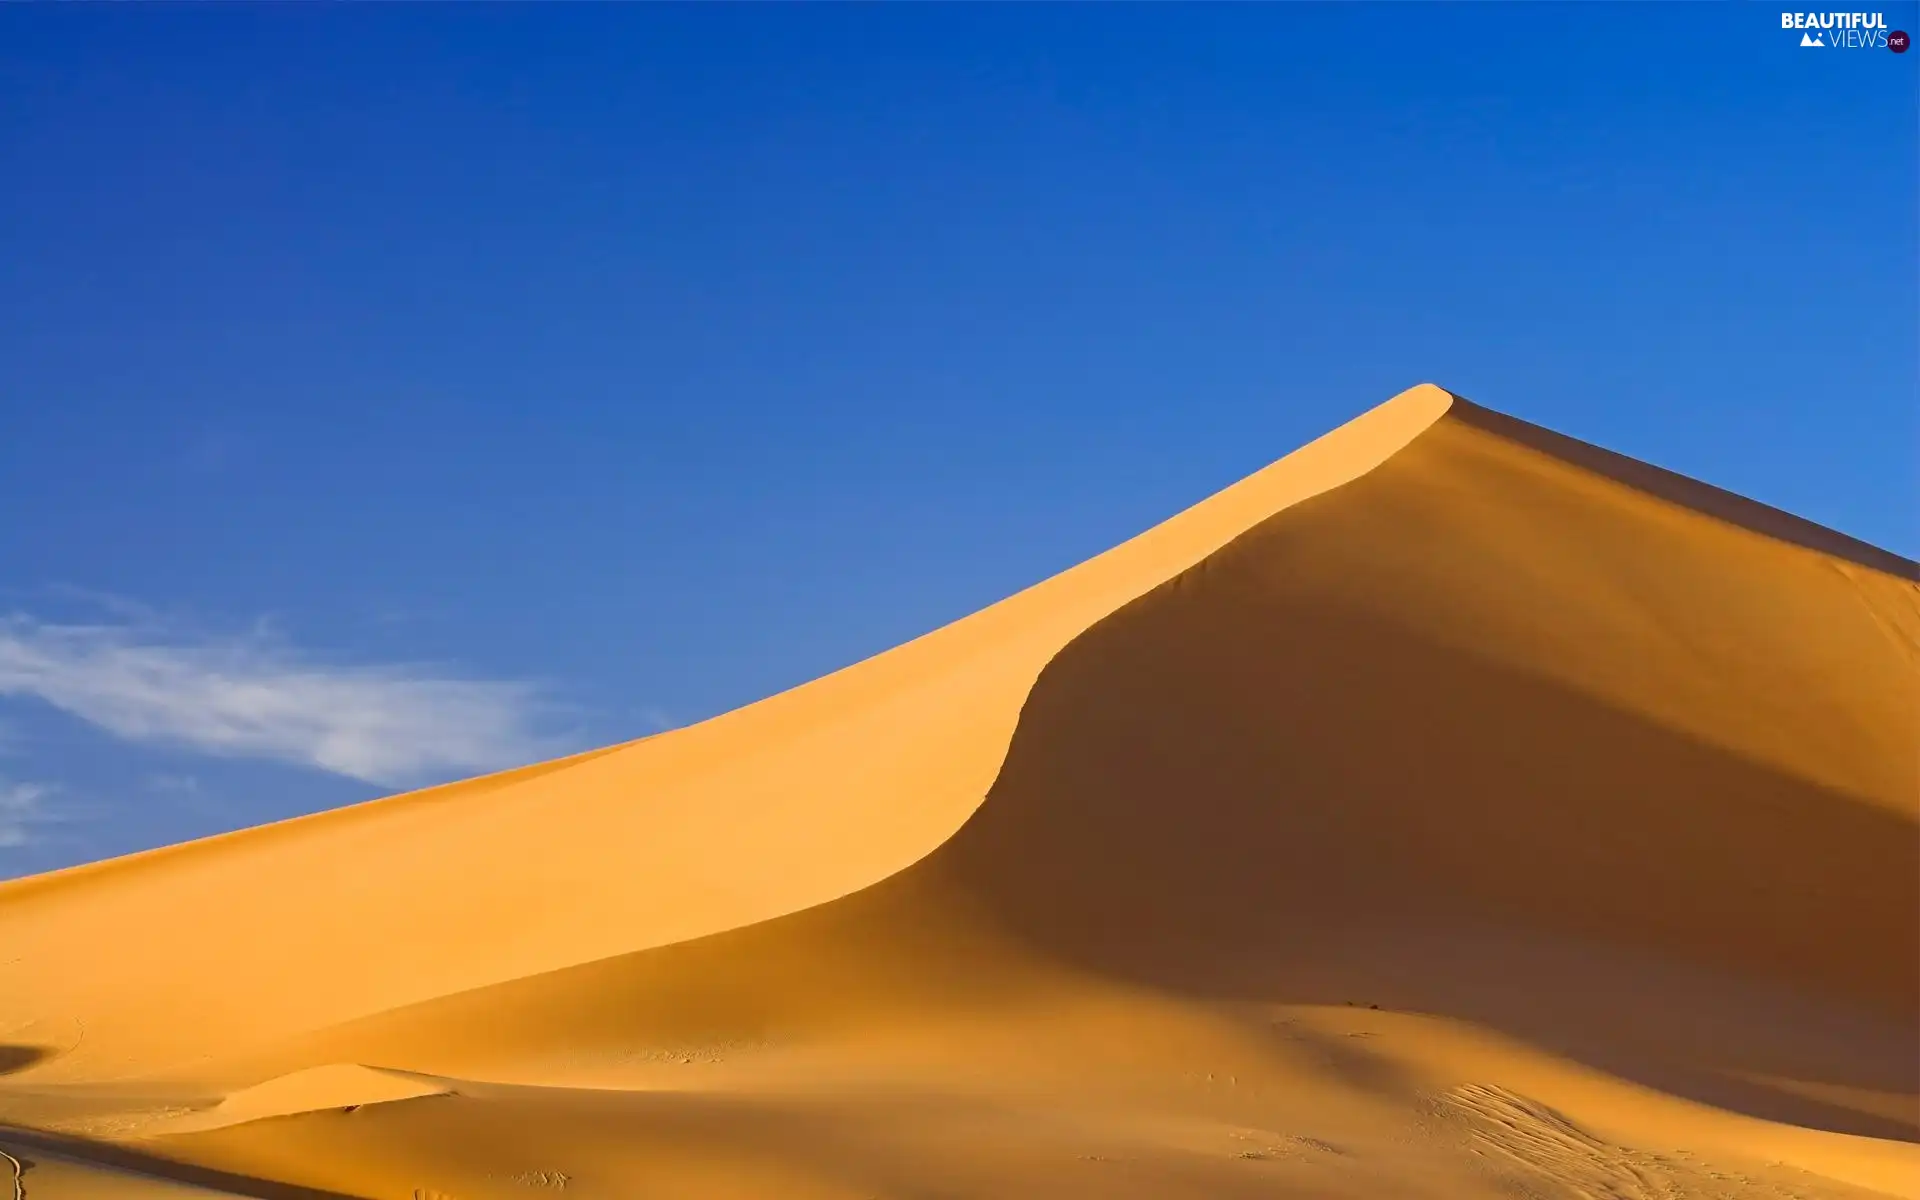 Sand, Desert, down